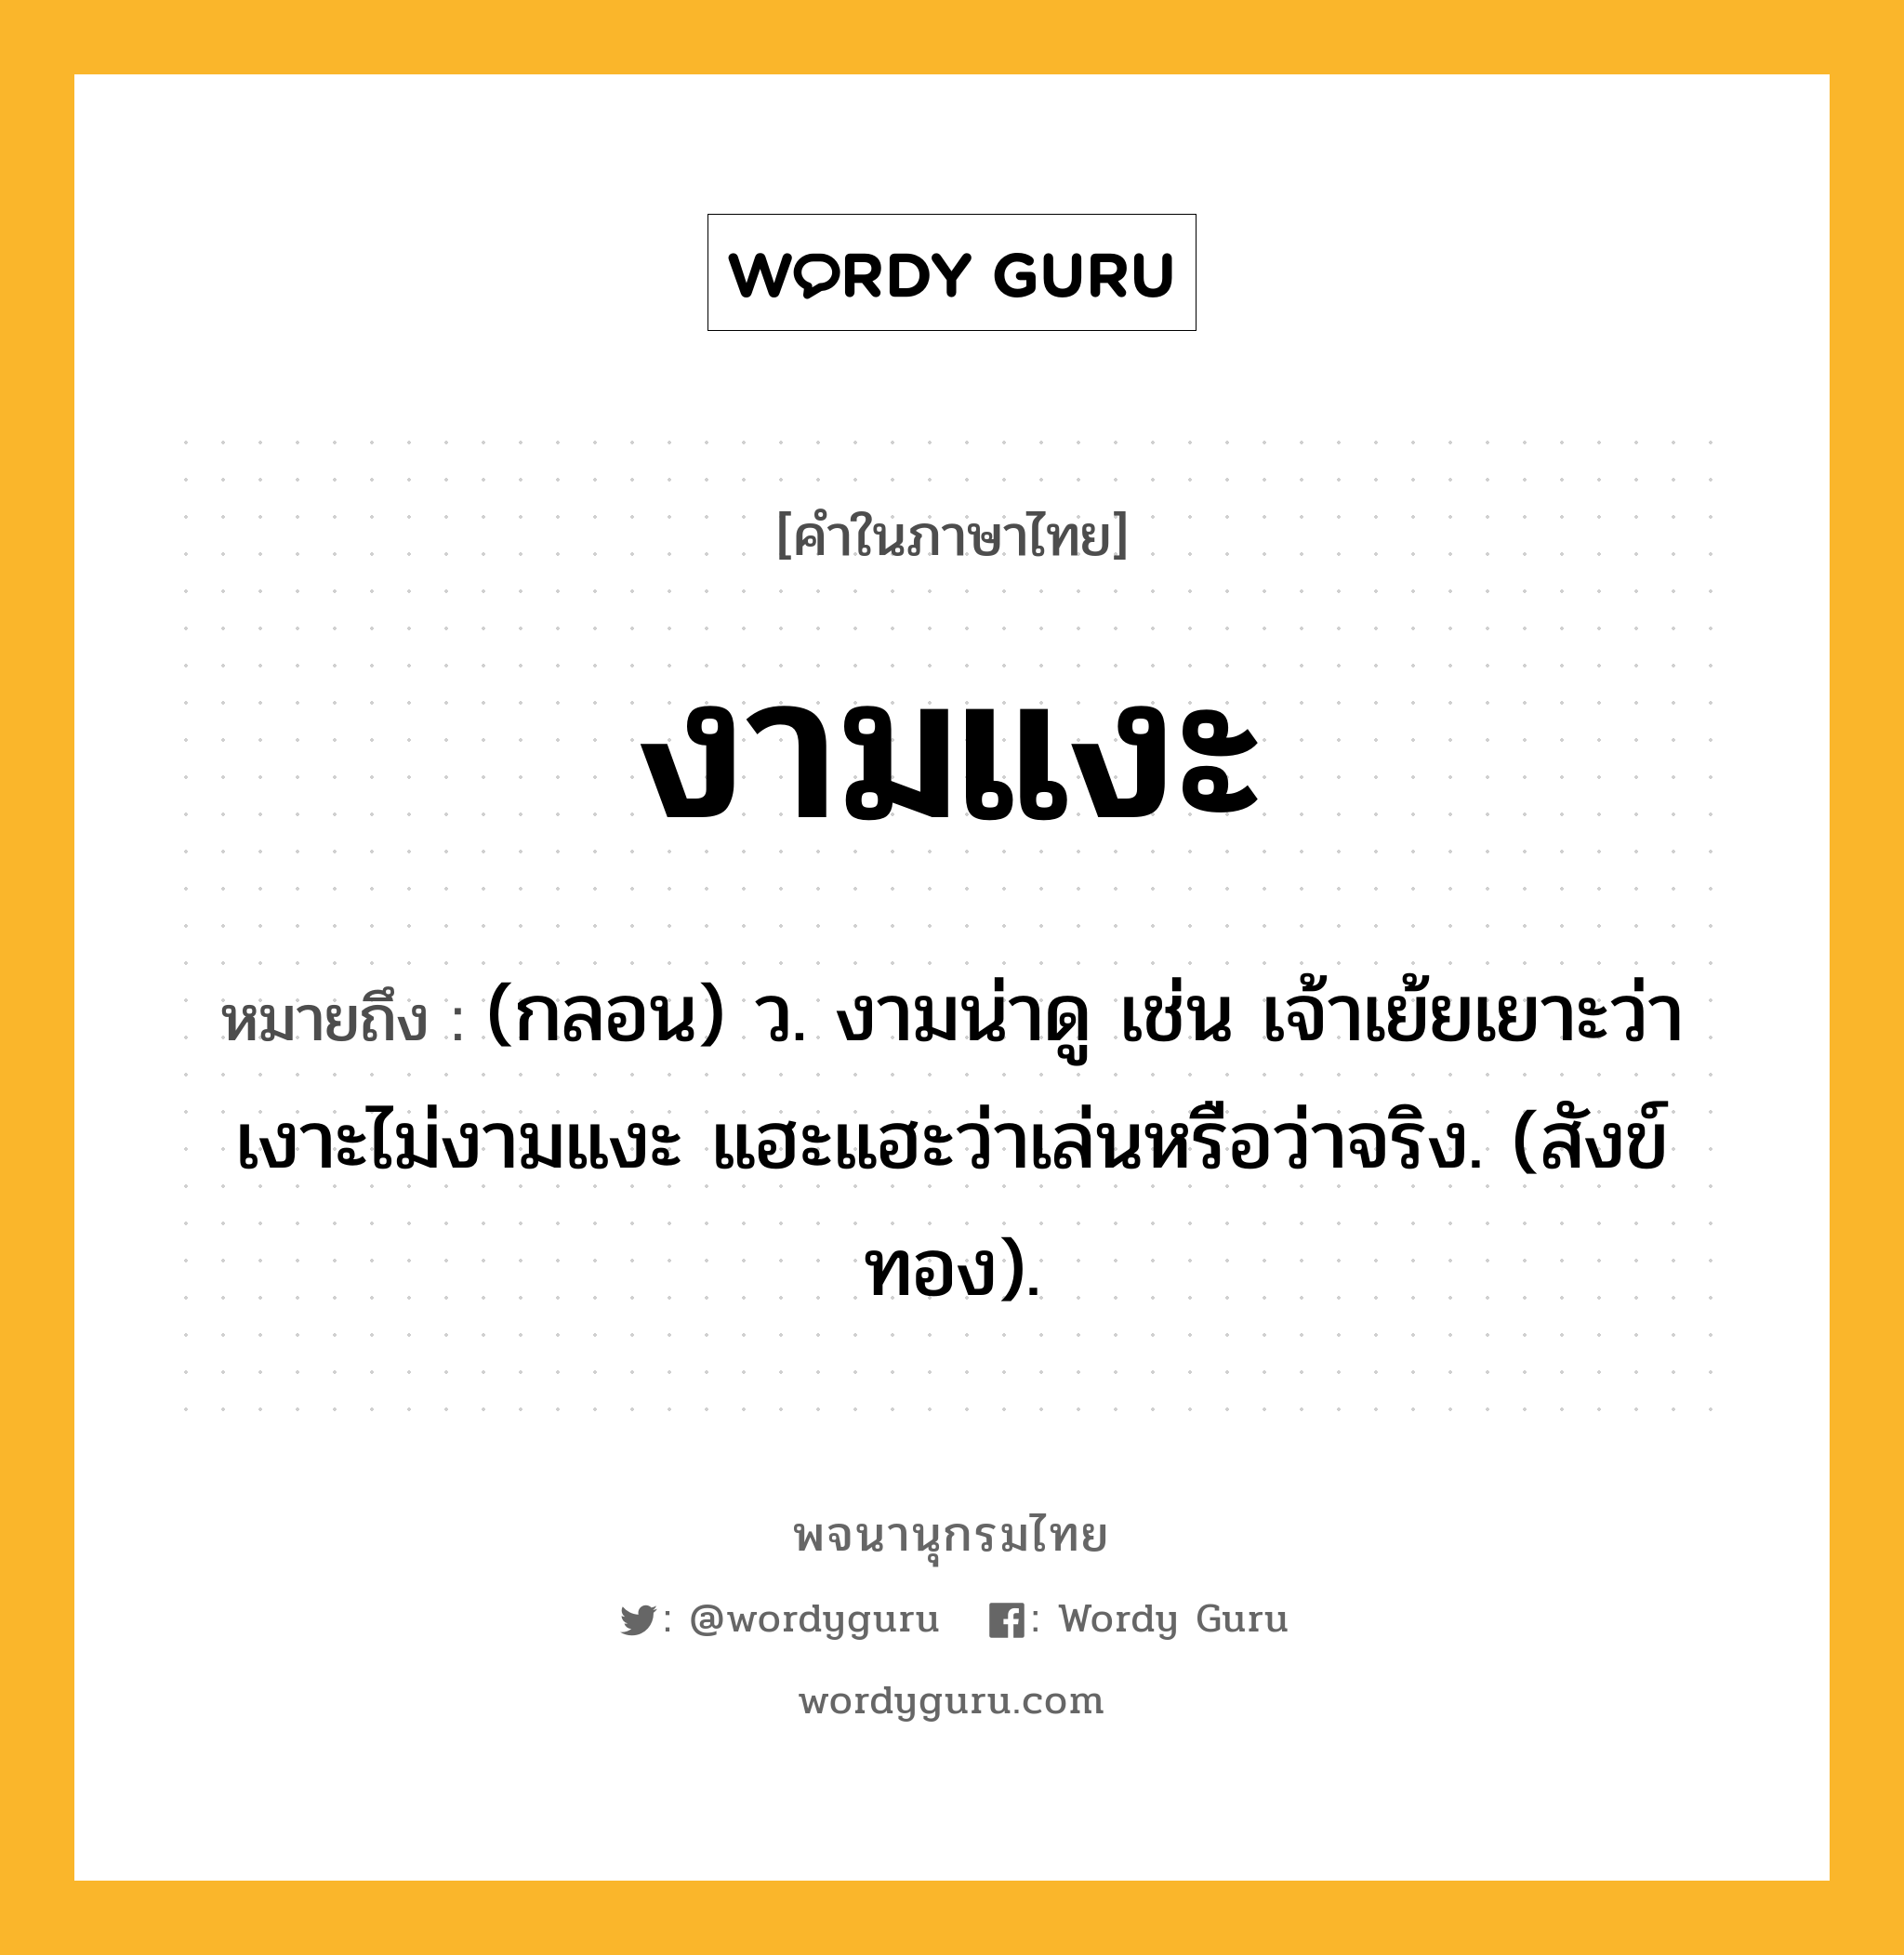 งามแงะ หมายถึงอะไร?, คำในภาษาไทย งามแงะ หมายถึง (กลอน) ว. งามน่าดู เช่น เจ้าเย้ยเยาะว่าเงาะไม่งามแงะ แฮะแฮะว่าเล่นหรือว่าจริง. (สังข์ทอง).